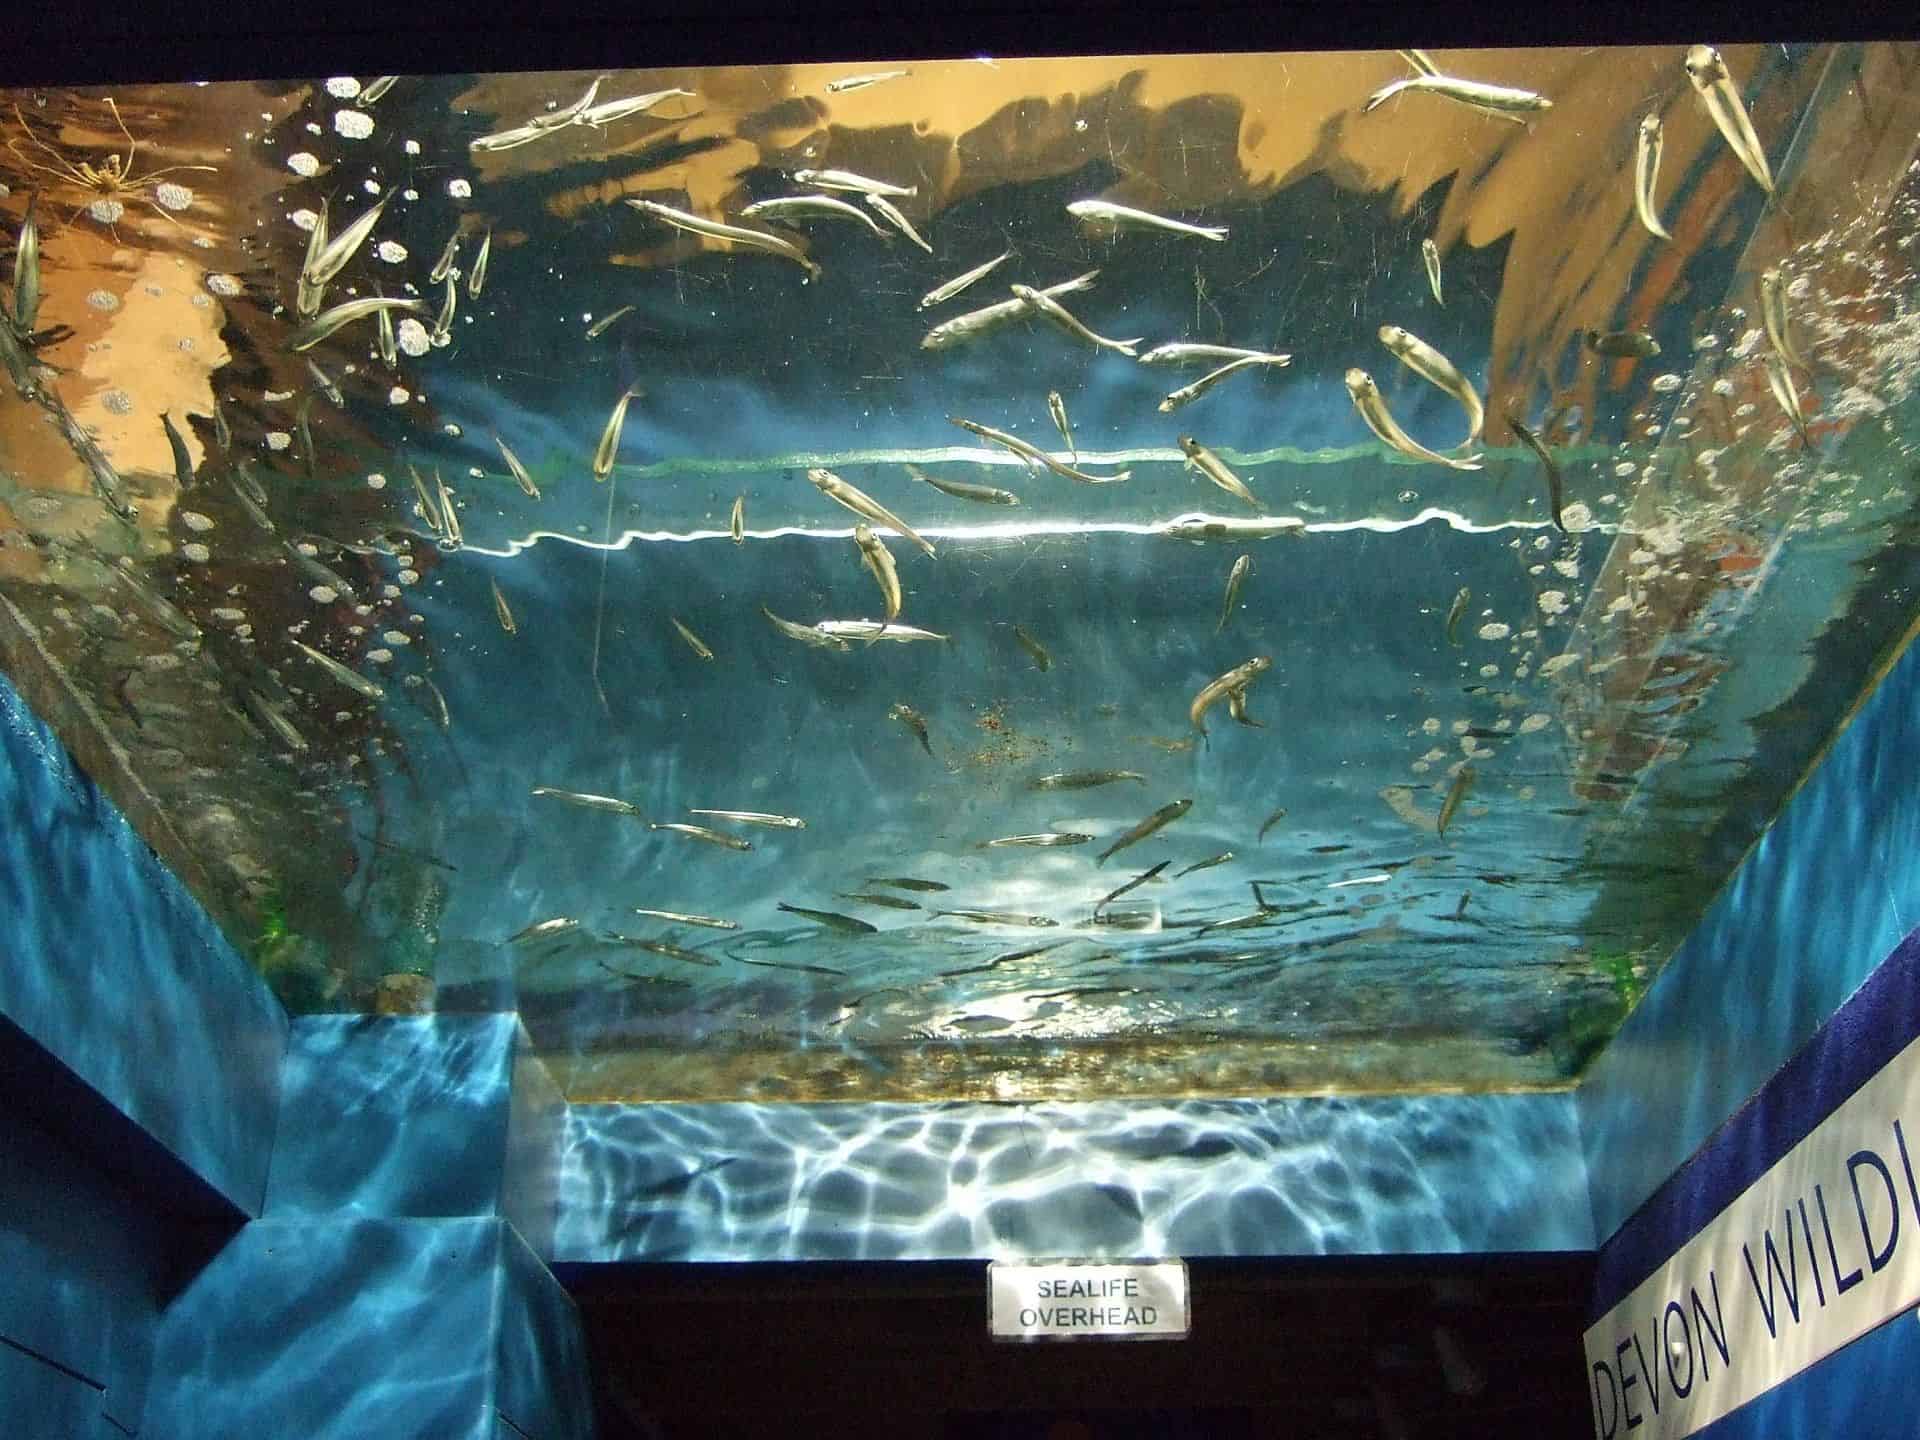 The Ilfracombe Aquarium in UK